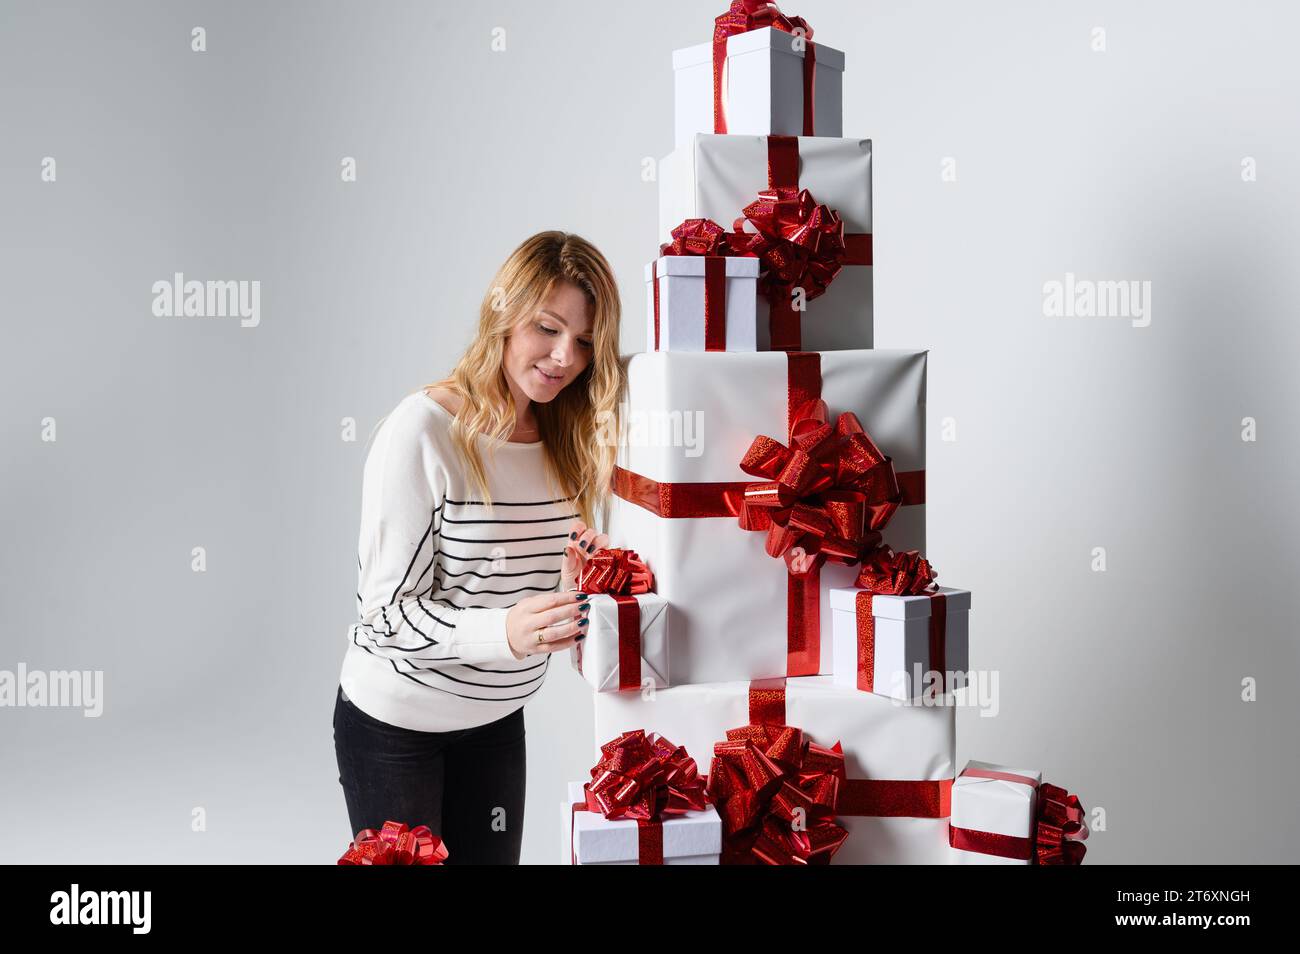 Une belle jeune femme magnifique pose parmi une montagne de boîtes-cadeaux blanches dans un fond gris. Joliment décoré pour Noël. Mode vacances Banque D'Images